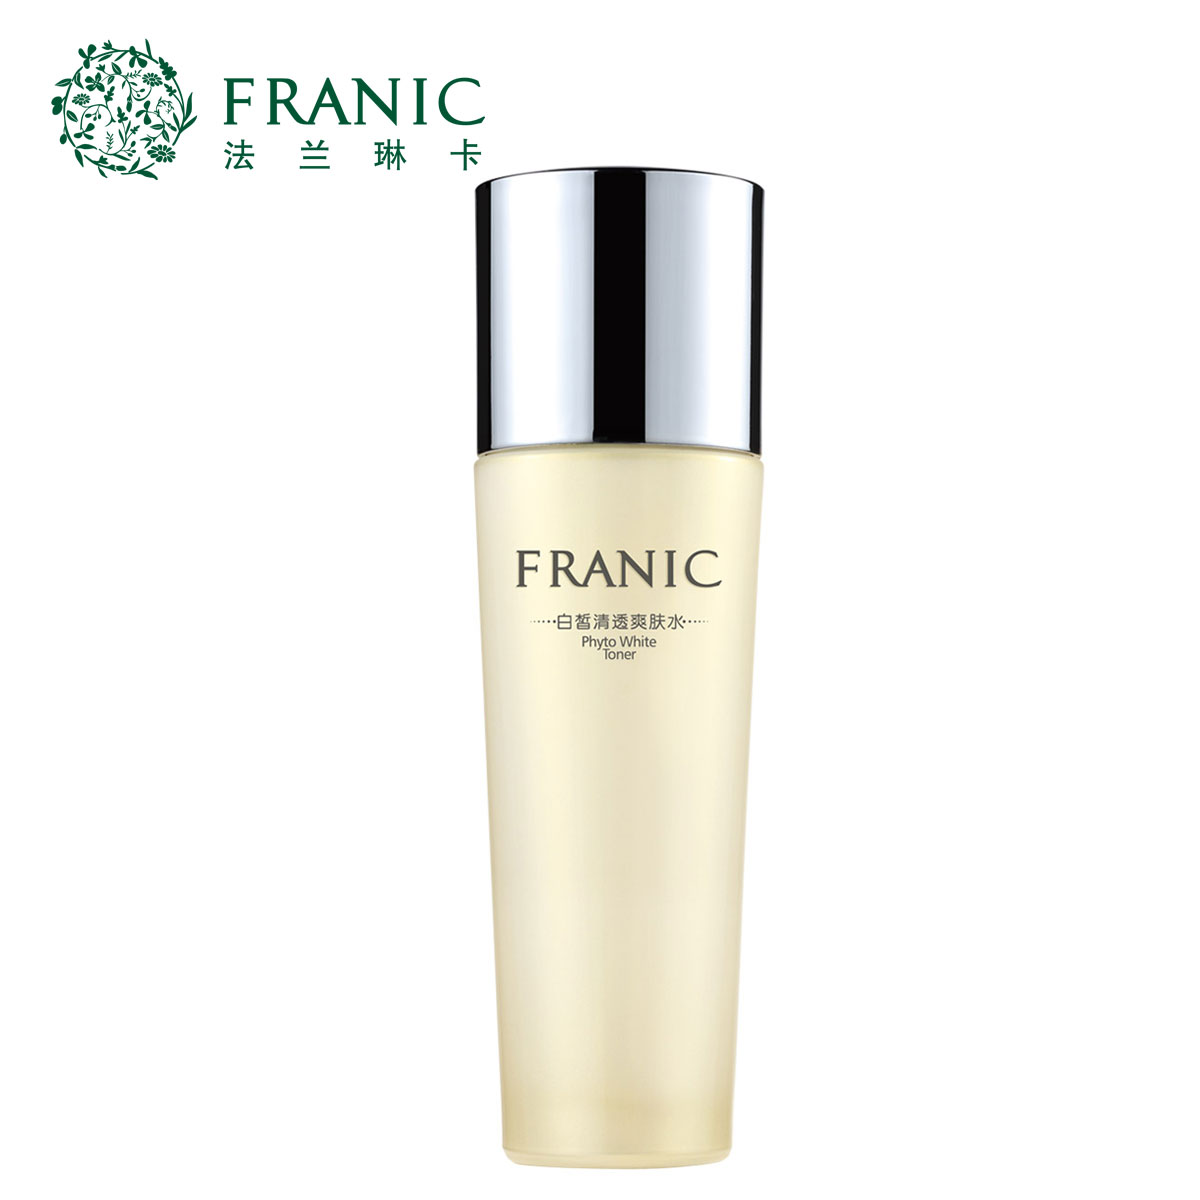 法兰琳卡白皙清透爽肤水皙白舒缓提亮肤色保湿法兰林卡正品化妆品